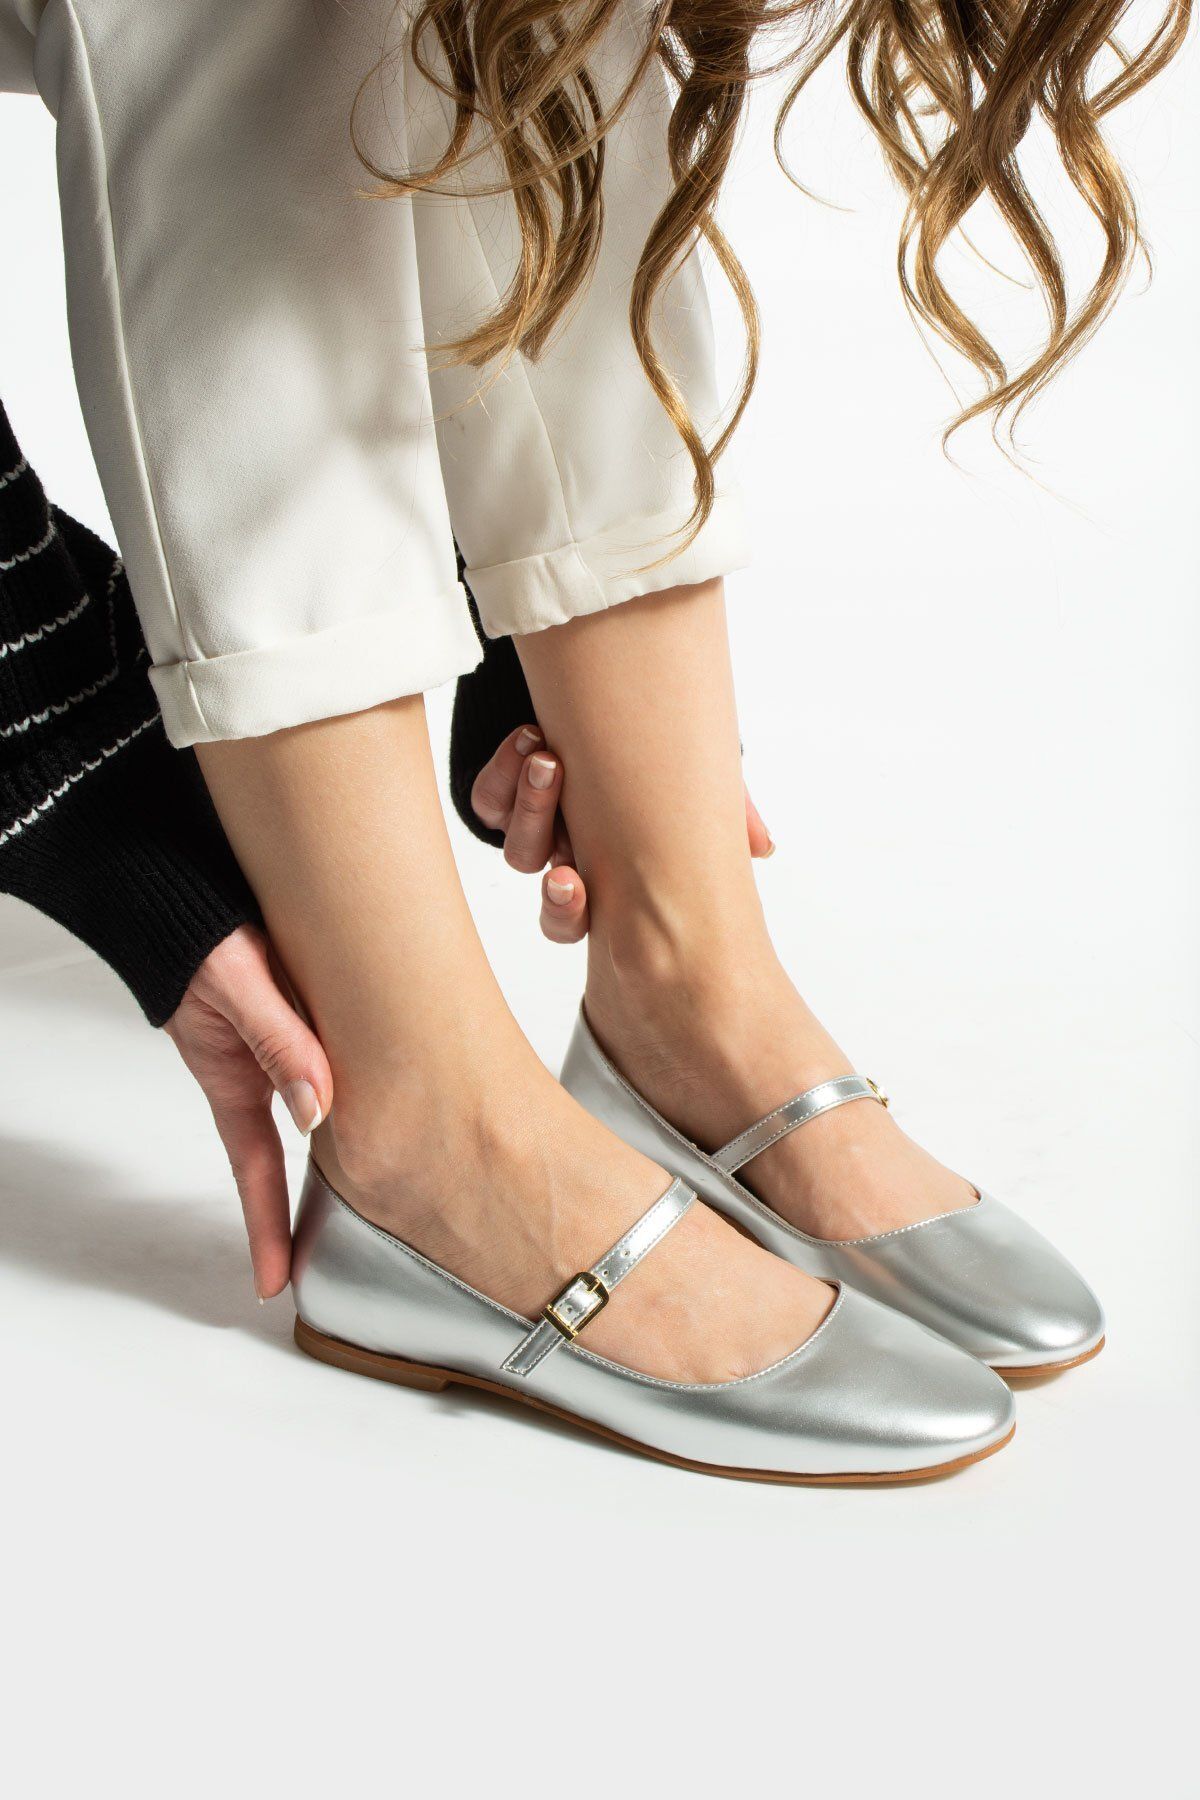 Tulin Shoes Astana Toka Detay Kadın Babet Gümüş